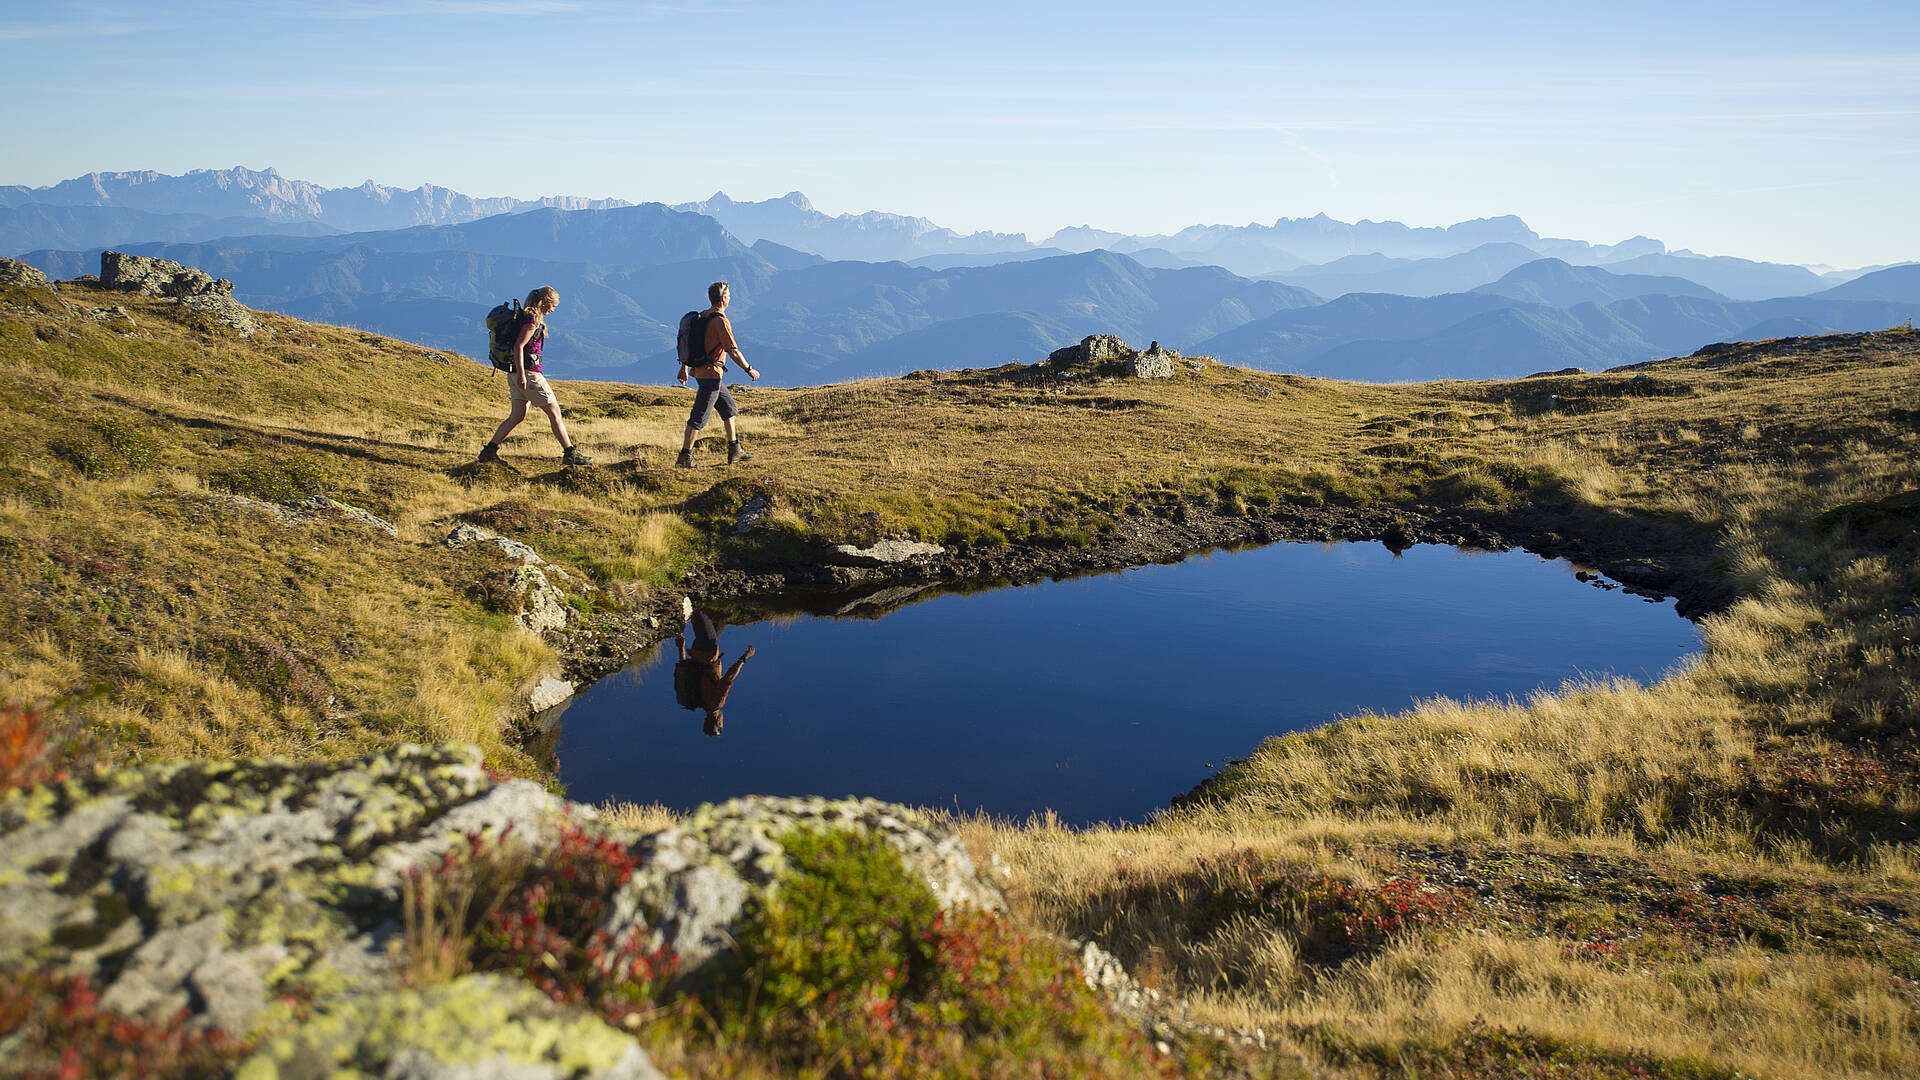 Genusswanderung am Alpe Adria Trail in der Region Millstaetter See